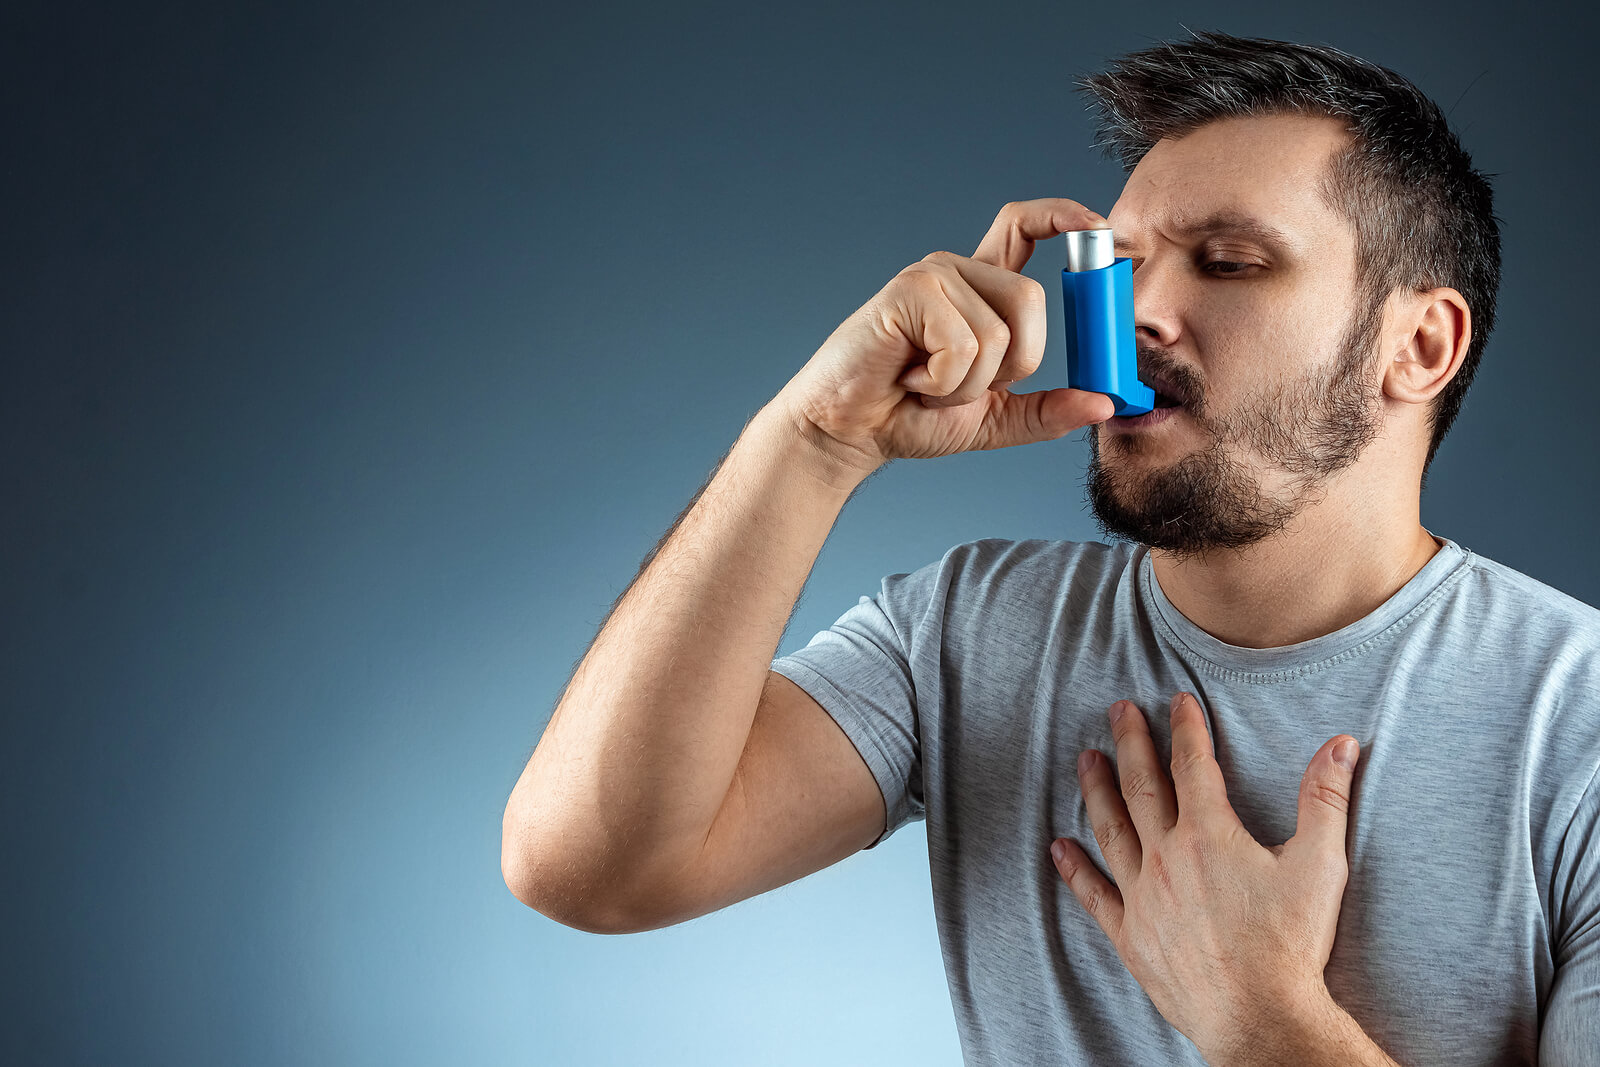 Convivere con l'asma è possibile con piccole precauzioni